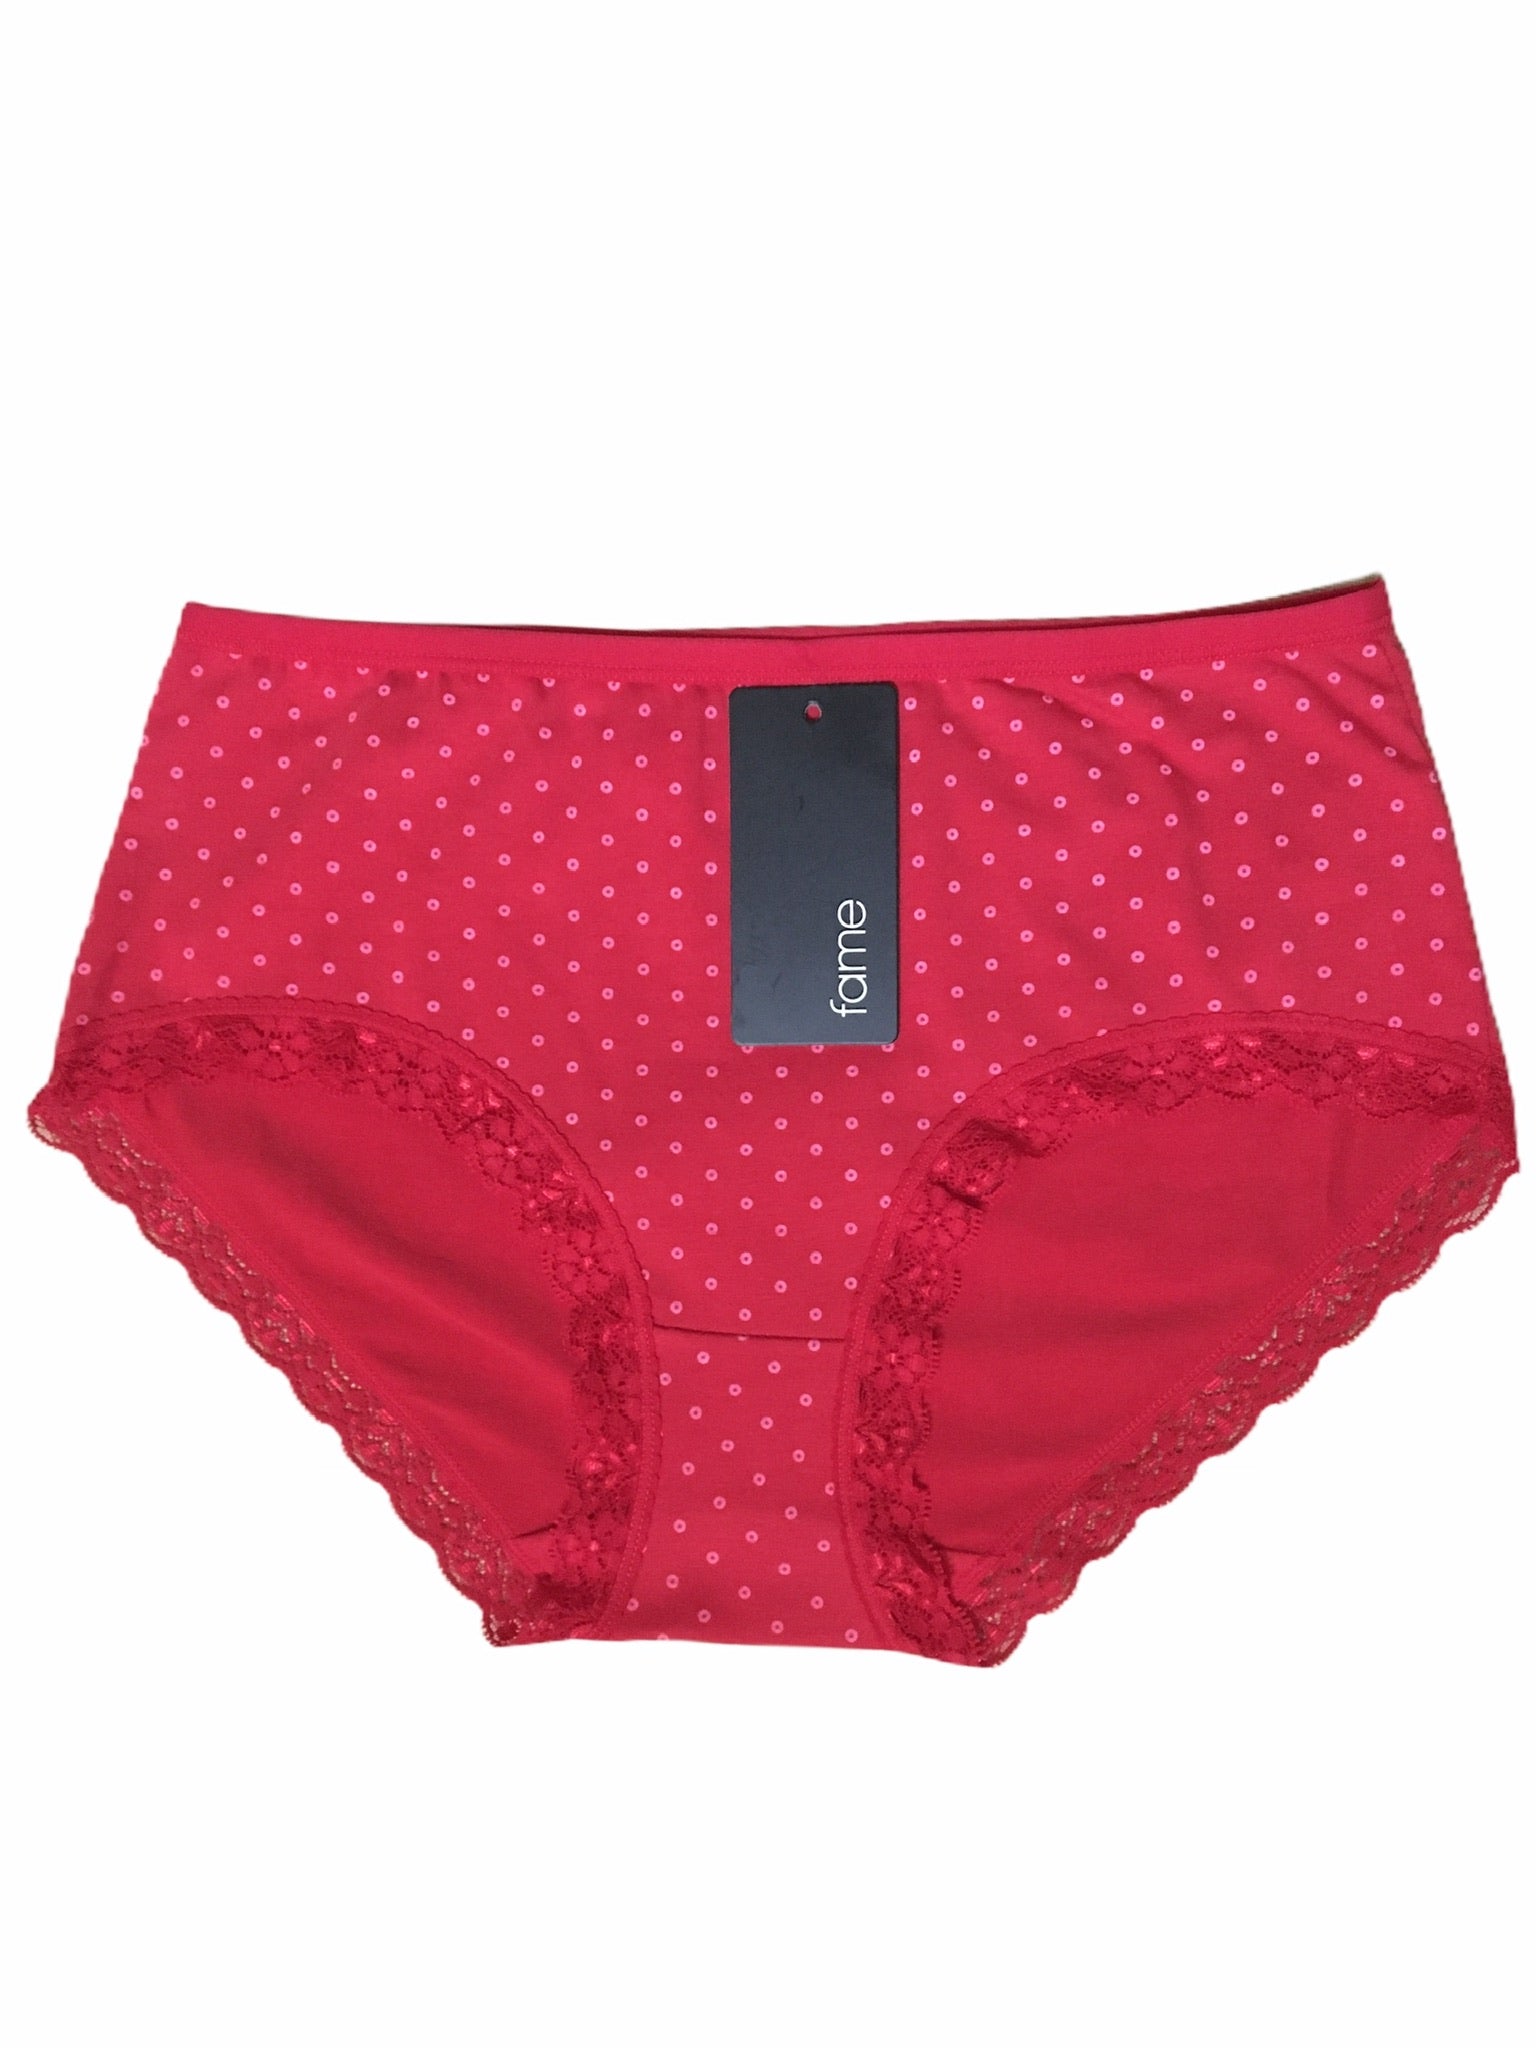 Print Wholesale Ladies Full Briefs Assorted Pattern Underwear (Size: S-XL)